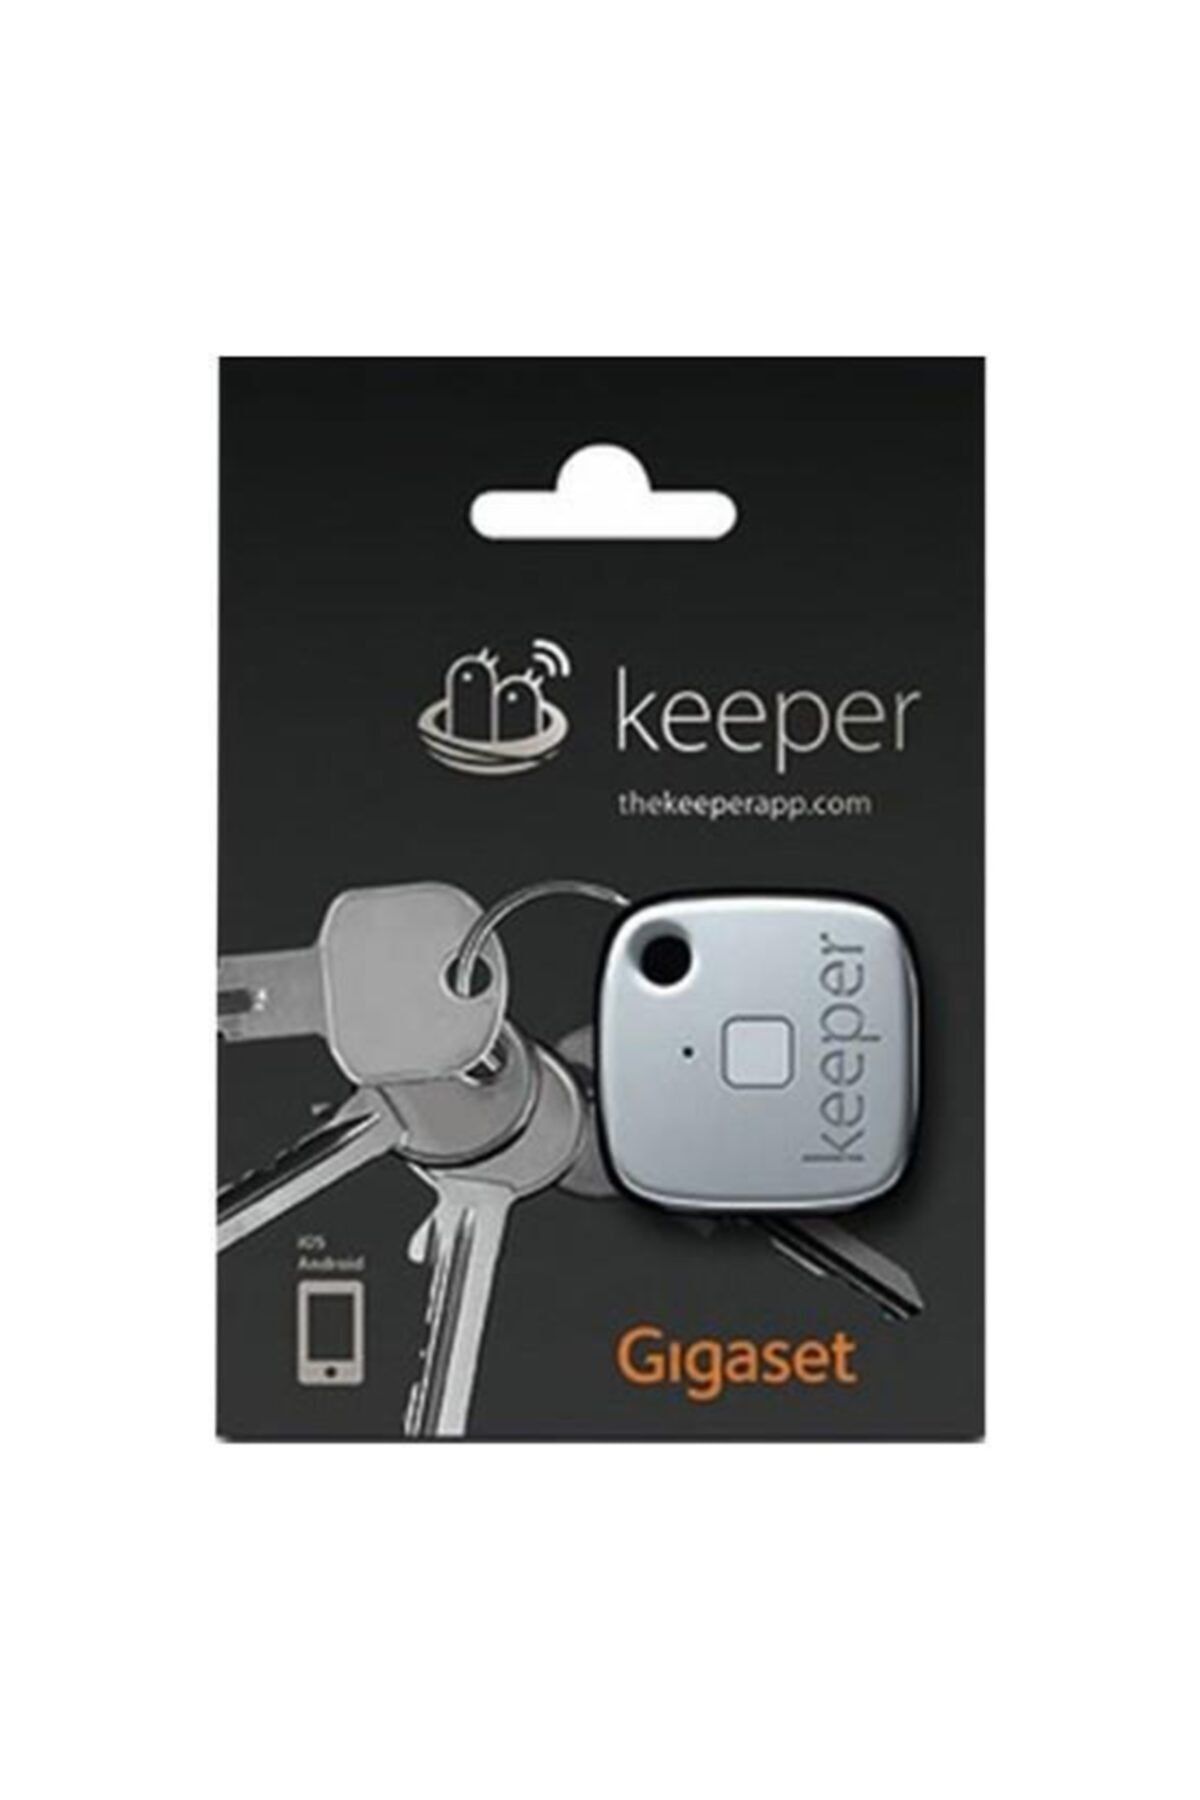 Gigaset Keeper Beyaz(Akıllı Telefonlar İle Entegre Elektronik İzleyici)